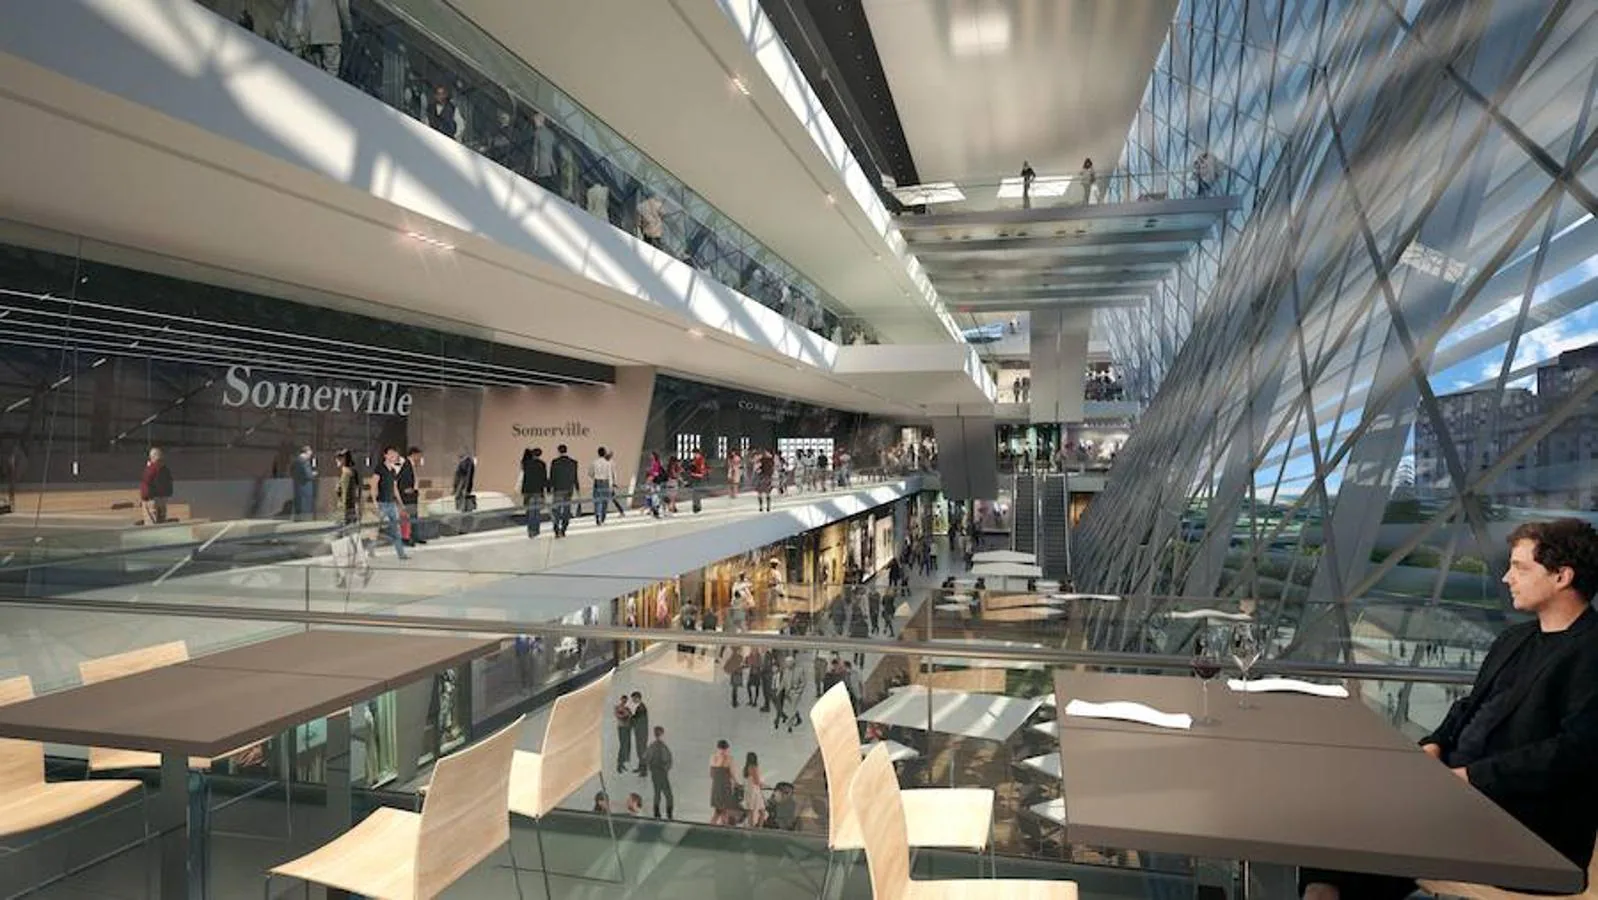 La instalación albergará un moderno centro comercial con tiendas, restaurantes y gastrobares, que sustituirá a la actual esquina del Bernabéu